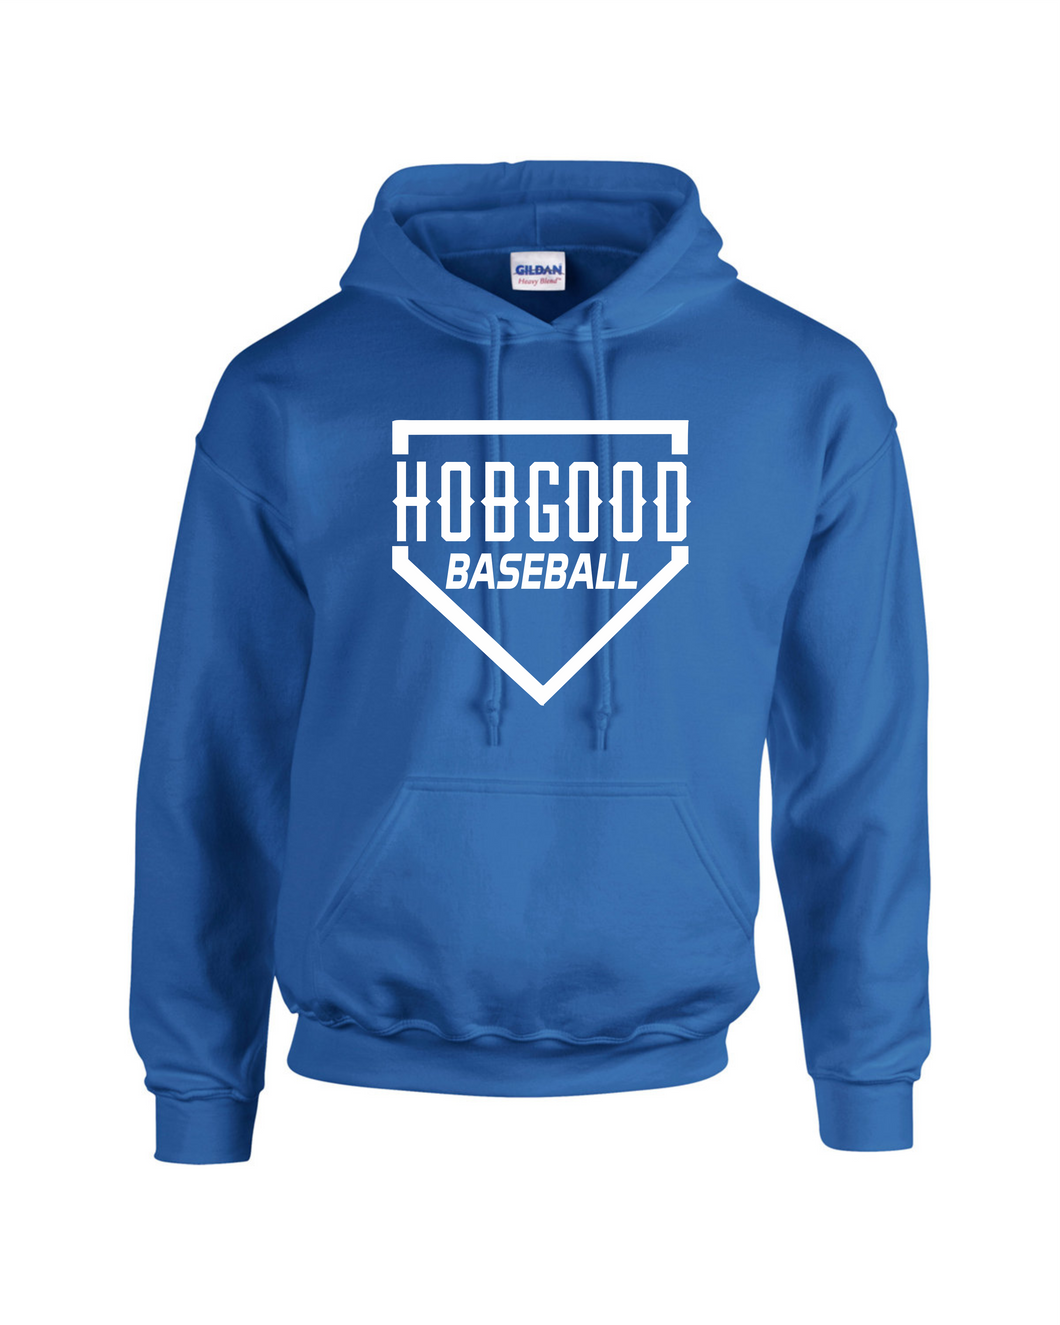 HG-BB-303-11 - Gildan-Hoodie - Hobgood Diamond Baseball Logo